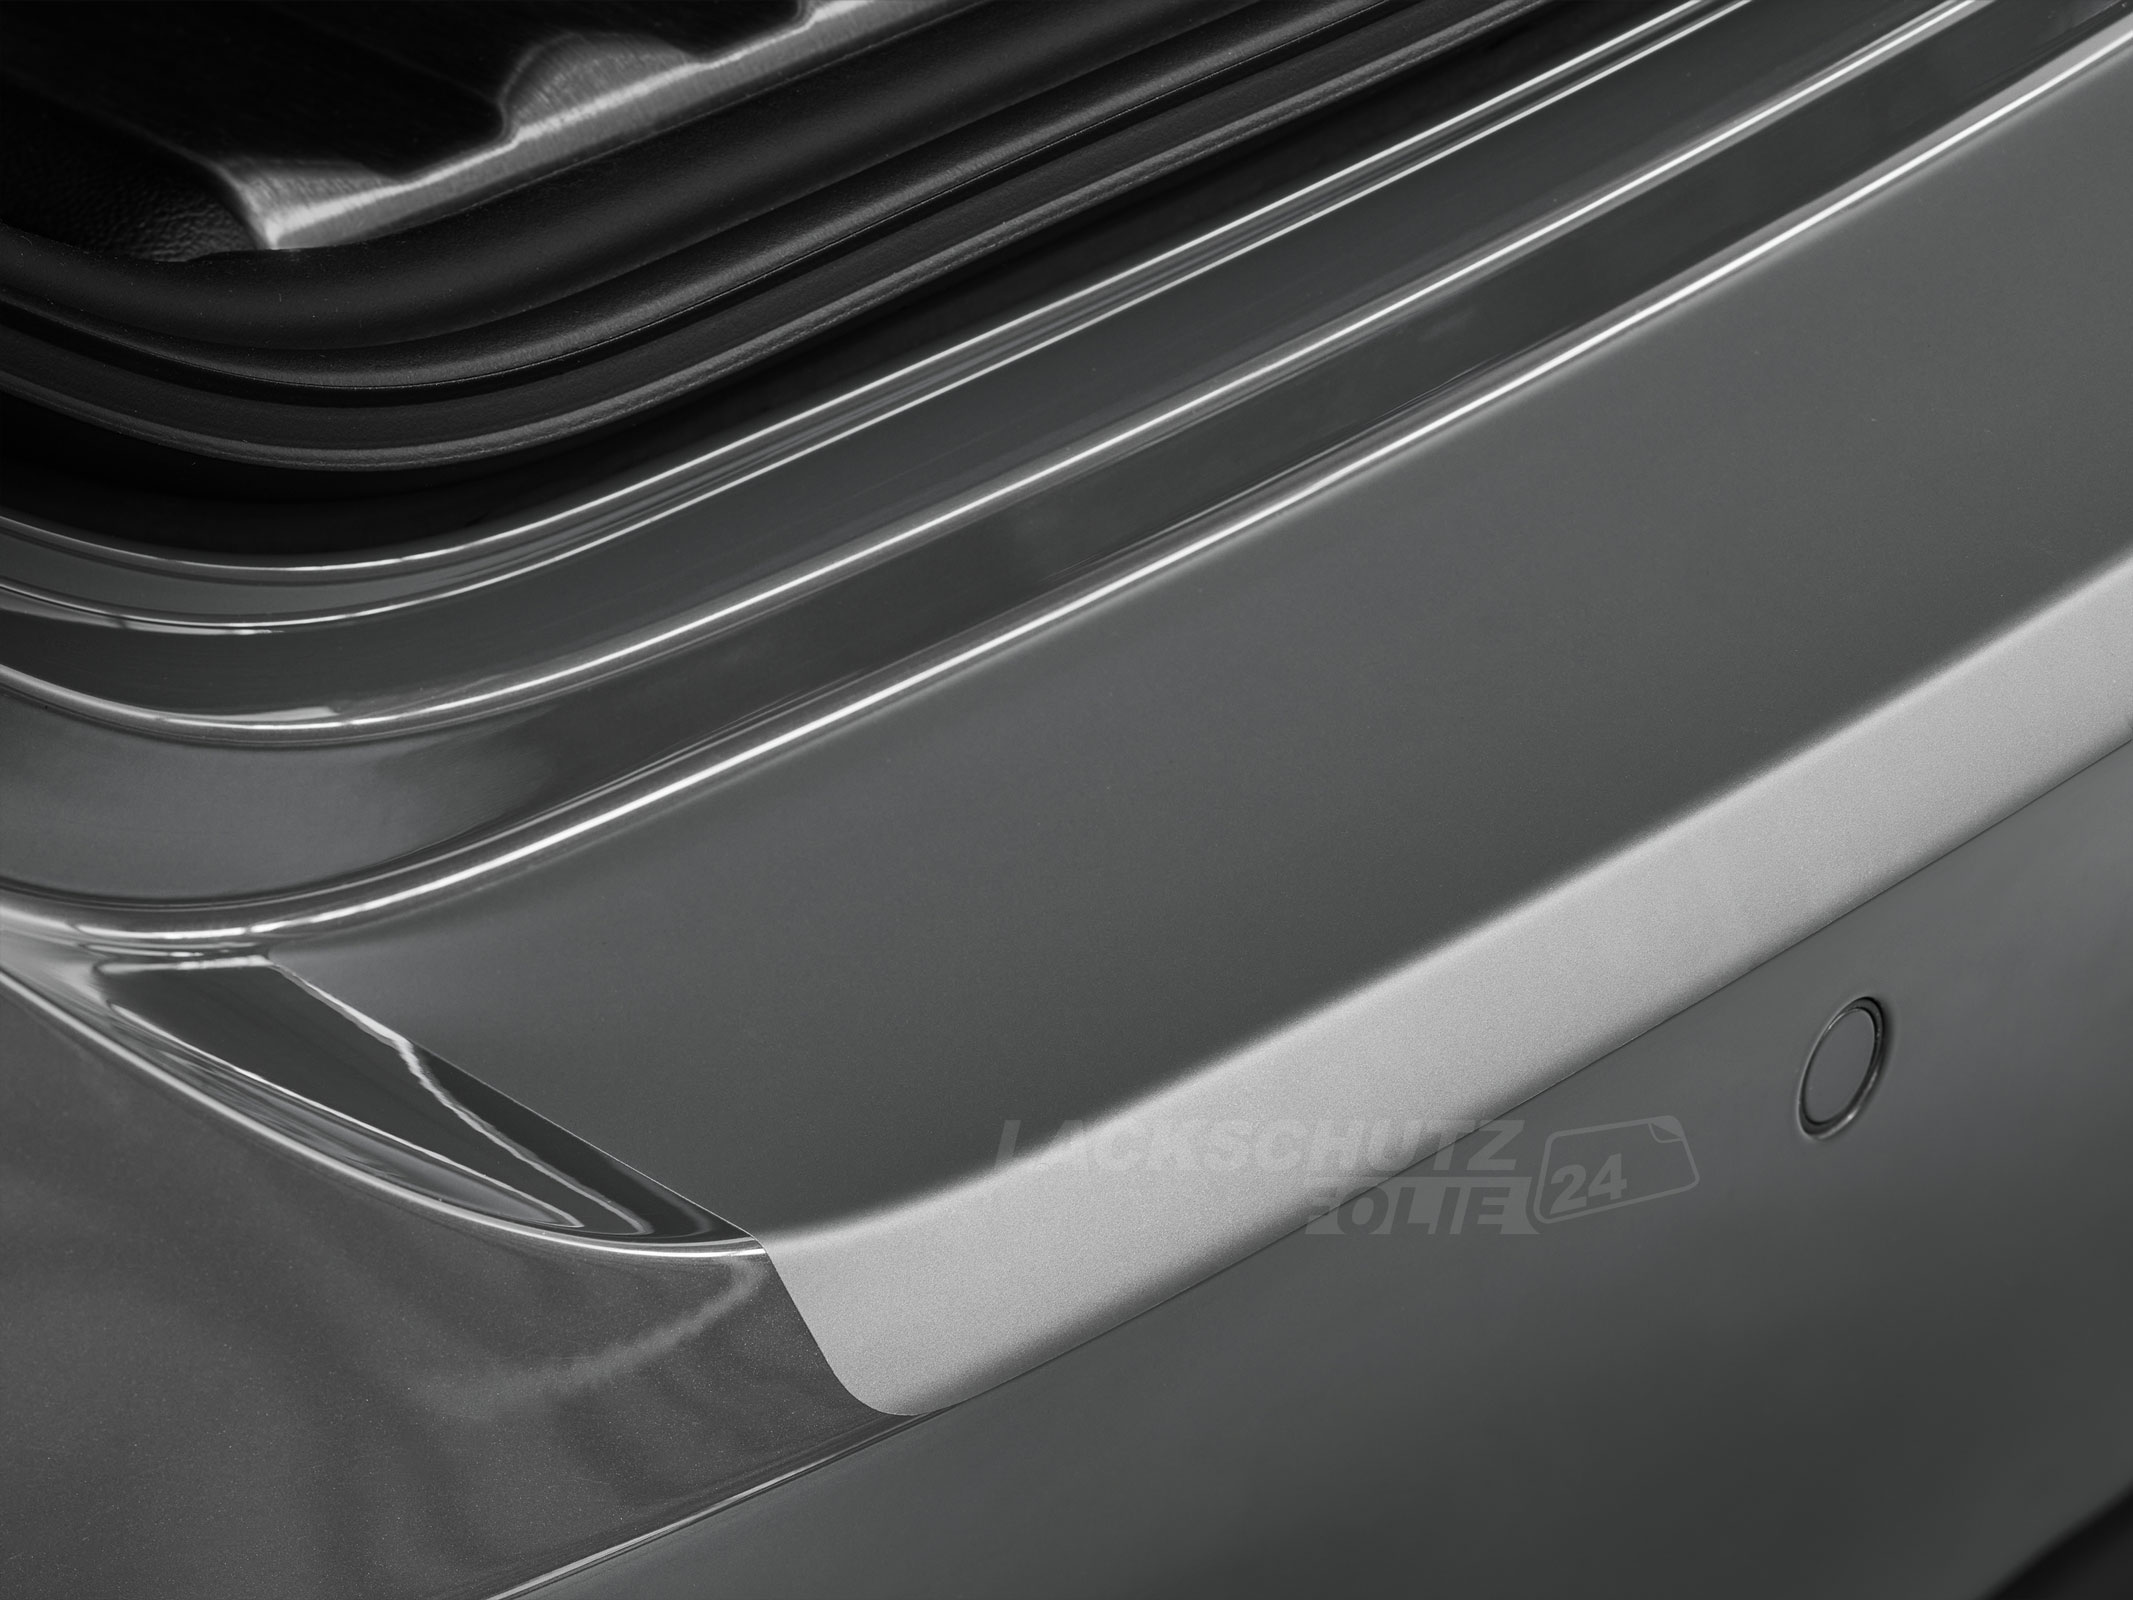 Ladekantenschutzfolie - Transparent Glatt MATT 110 µm stark  für VW / Volkswagen Passat ALLTRACK (Kombi) B8, Typ 3G, ab BJ 11/2014 + Facelift